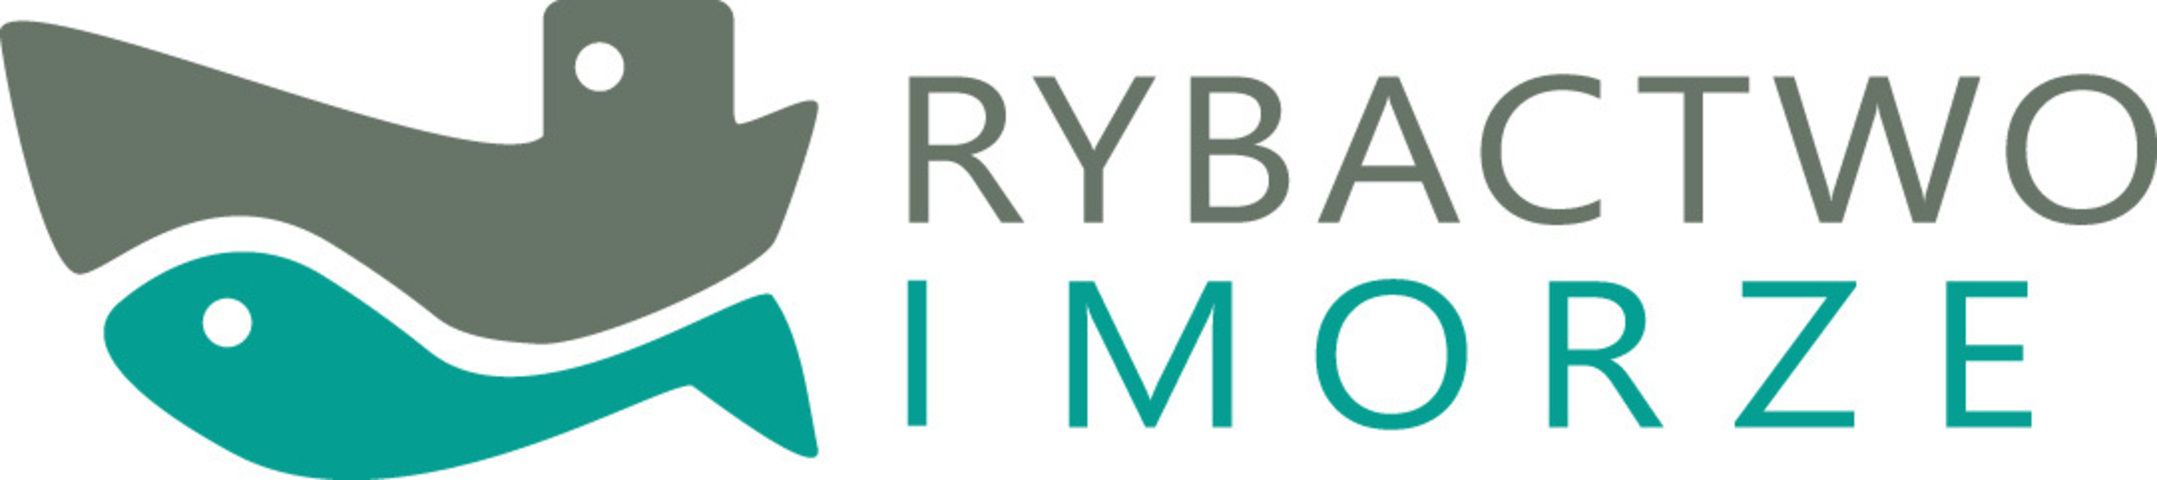 logo PO RYBY RGB.jpg